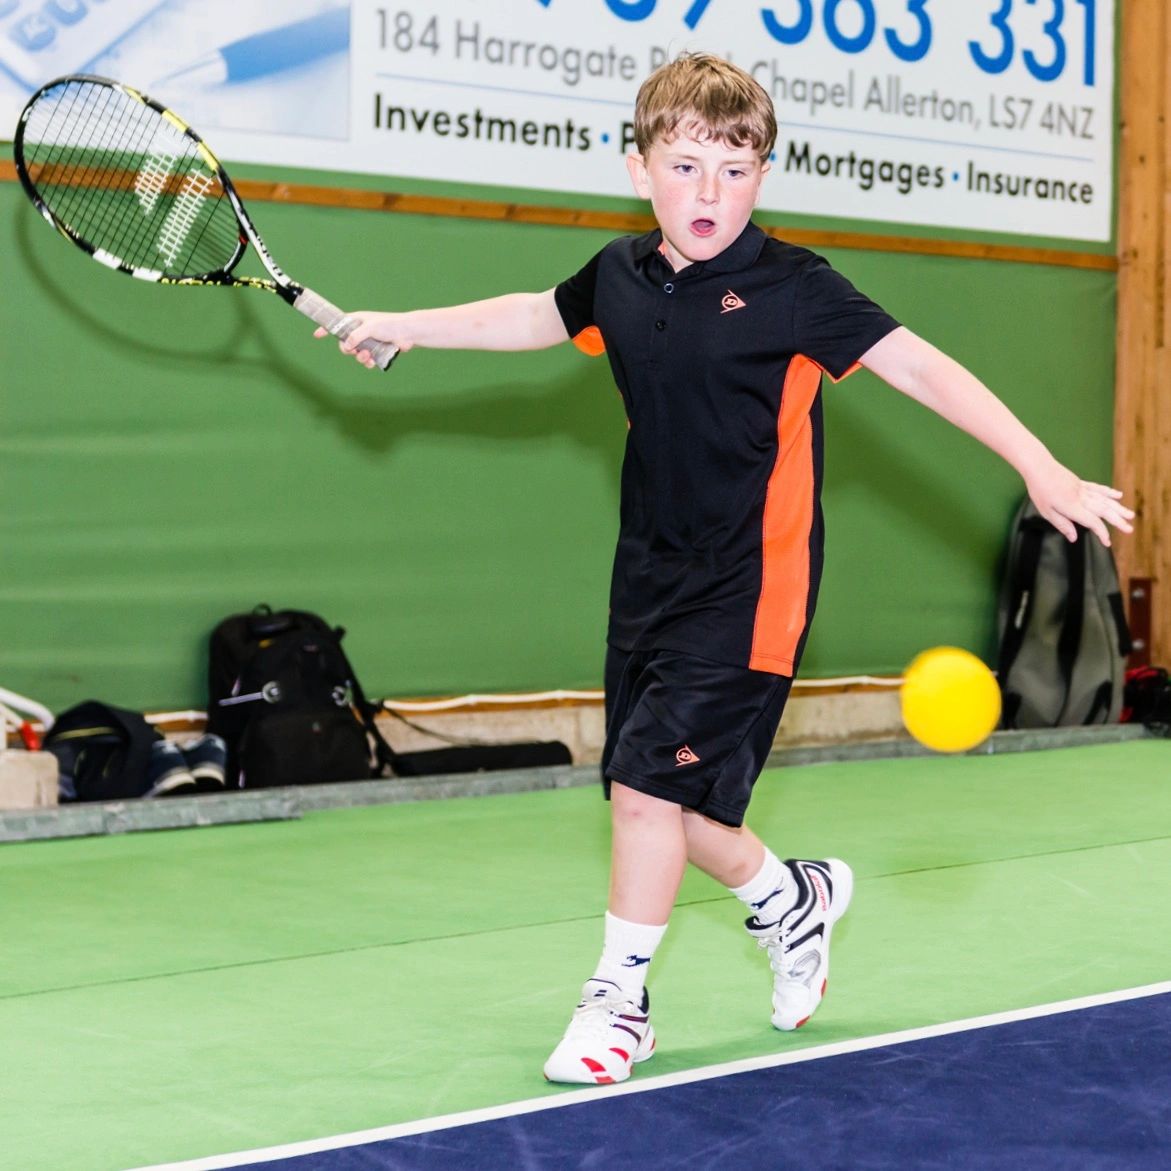 Junior Tennis hitting a tennis ball in Leeds.